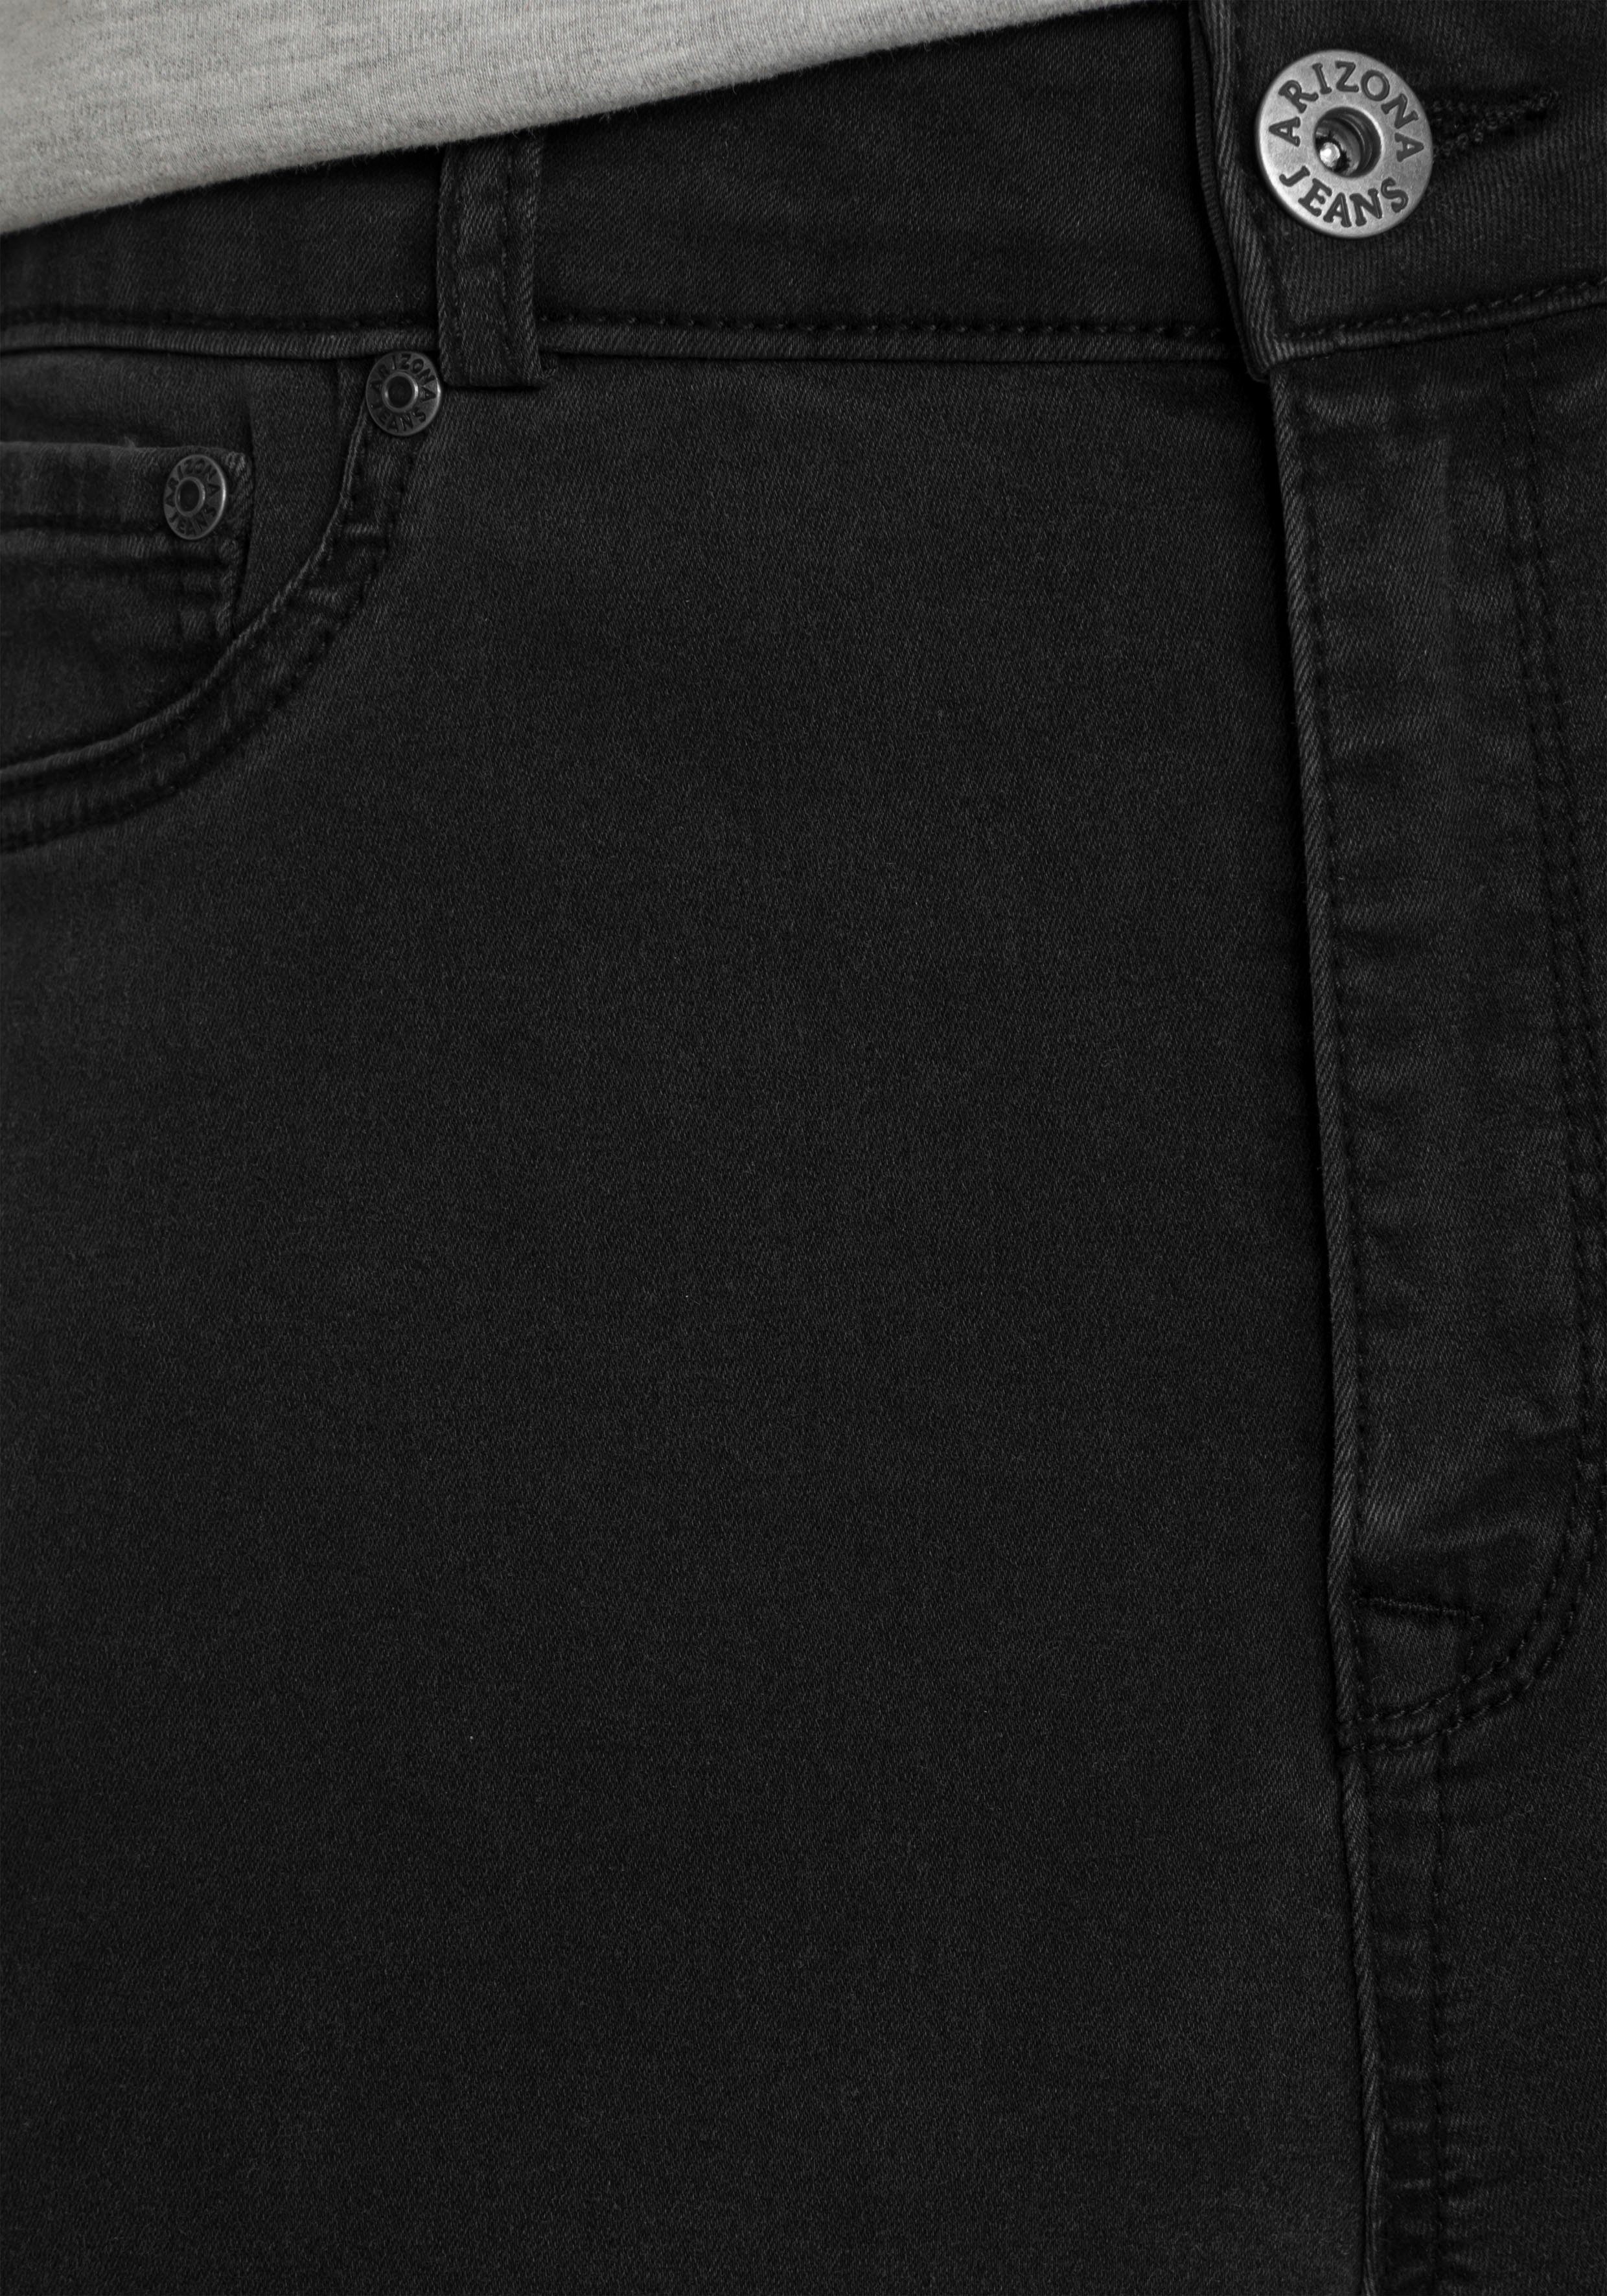 dark-grey mit offenem Saum Ultra Stretch Waist High Skinny-fit-Jeans Arizona